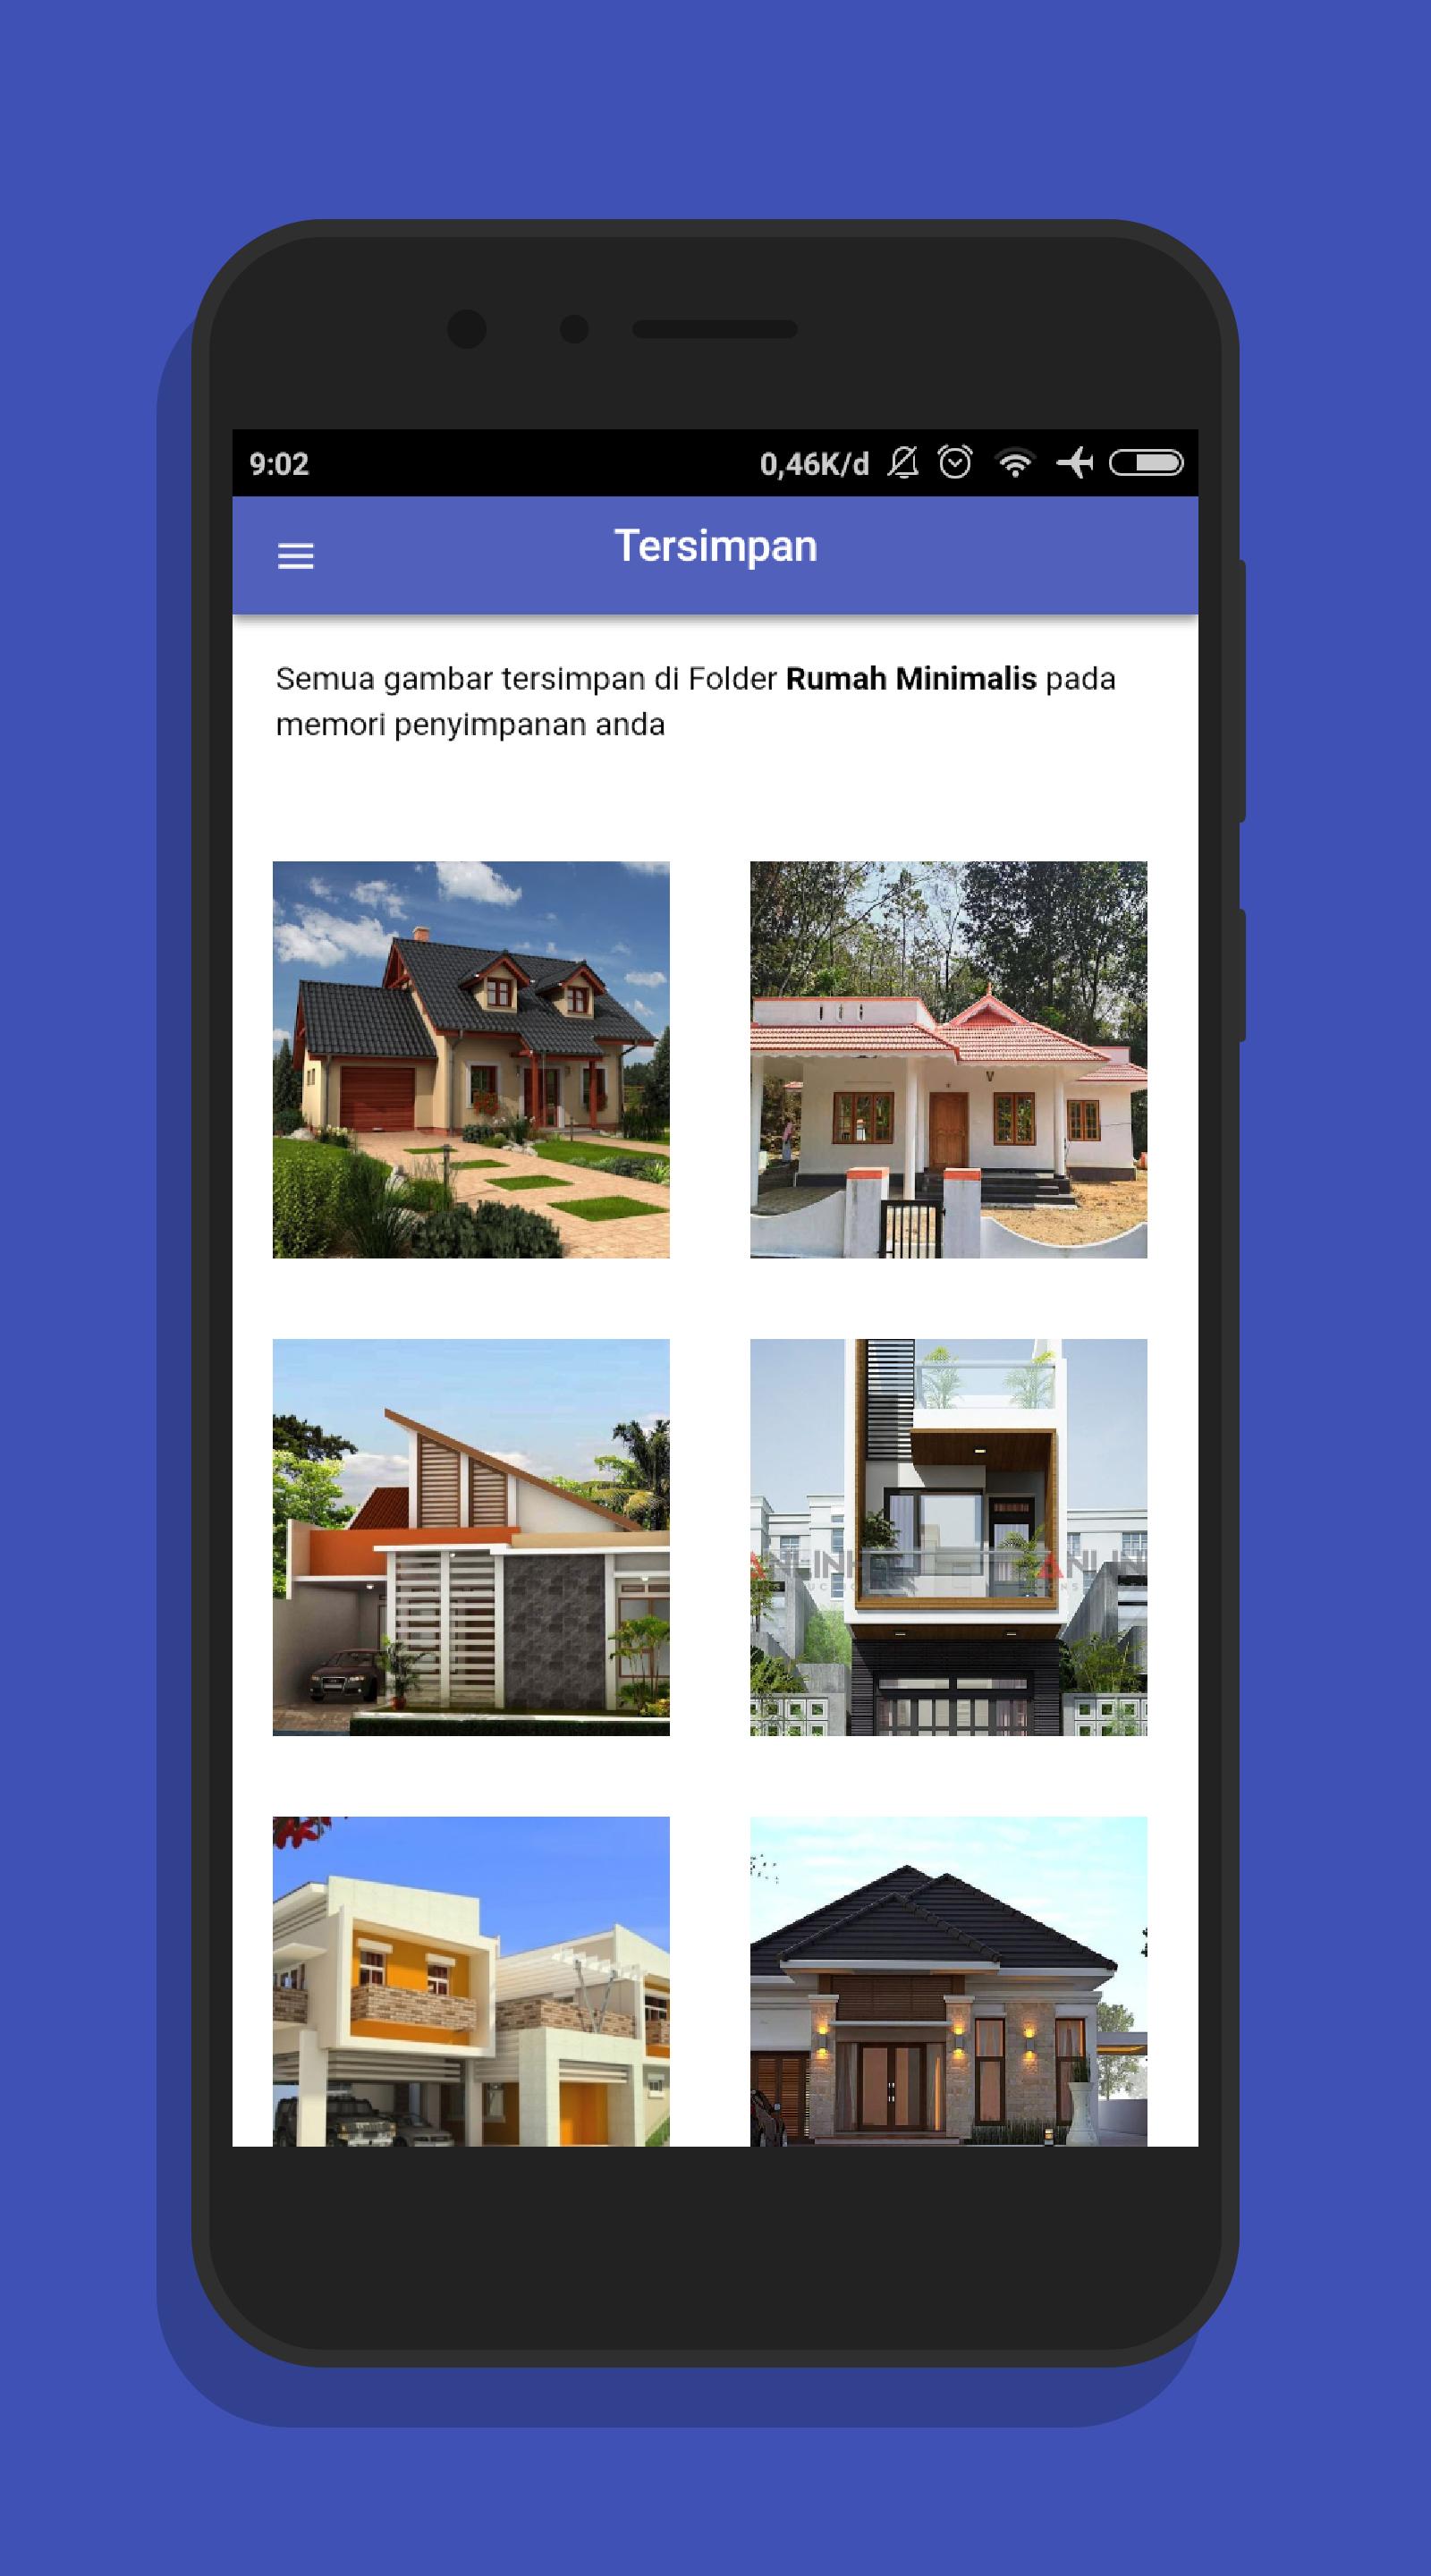 1001 Desain Rumah Minimalis Kumpulan Gambar For Android Apk